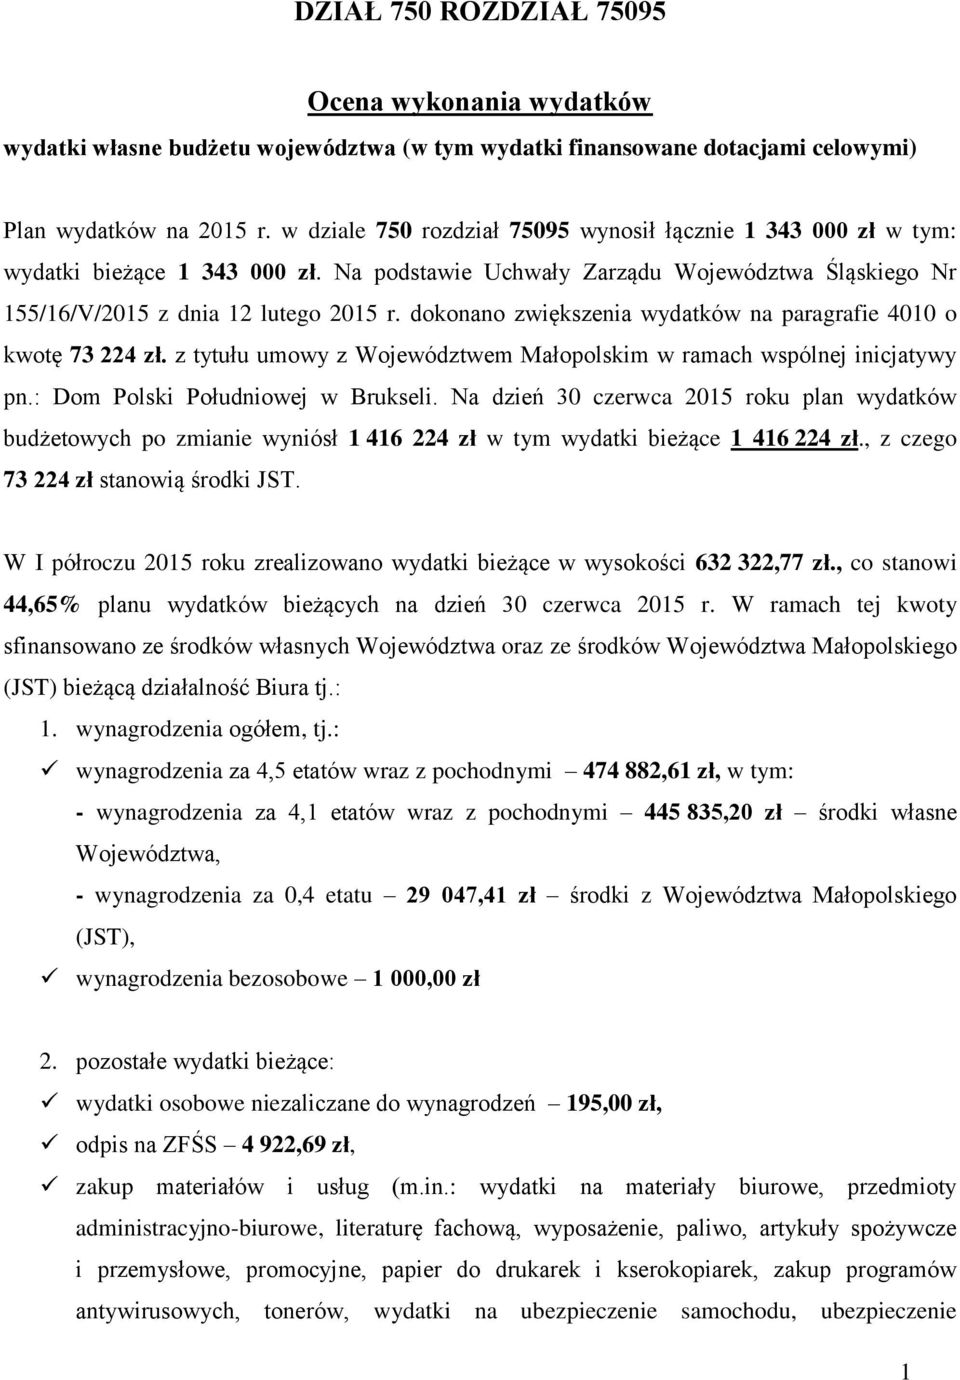 dokonano zwiększenia wydatków na paragrafie 4010 o kwotę 73 224 zł. z tytułu umowy z Województwem Małopolskim w ramach wspólnej inicjatywy pn.: Dom Polski Południowej w Brukseli.